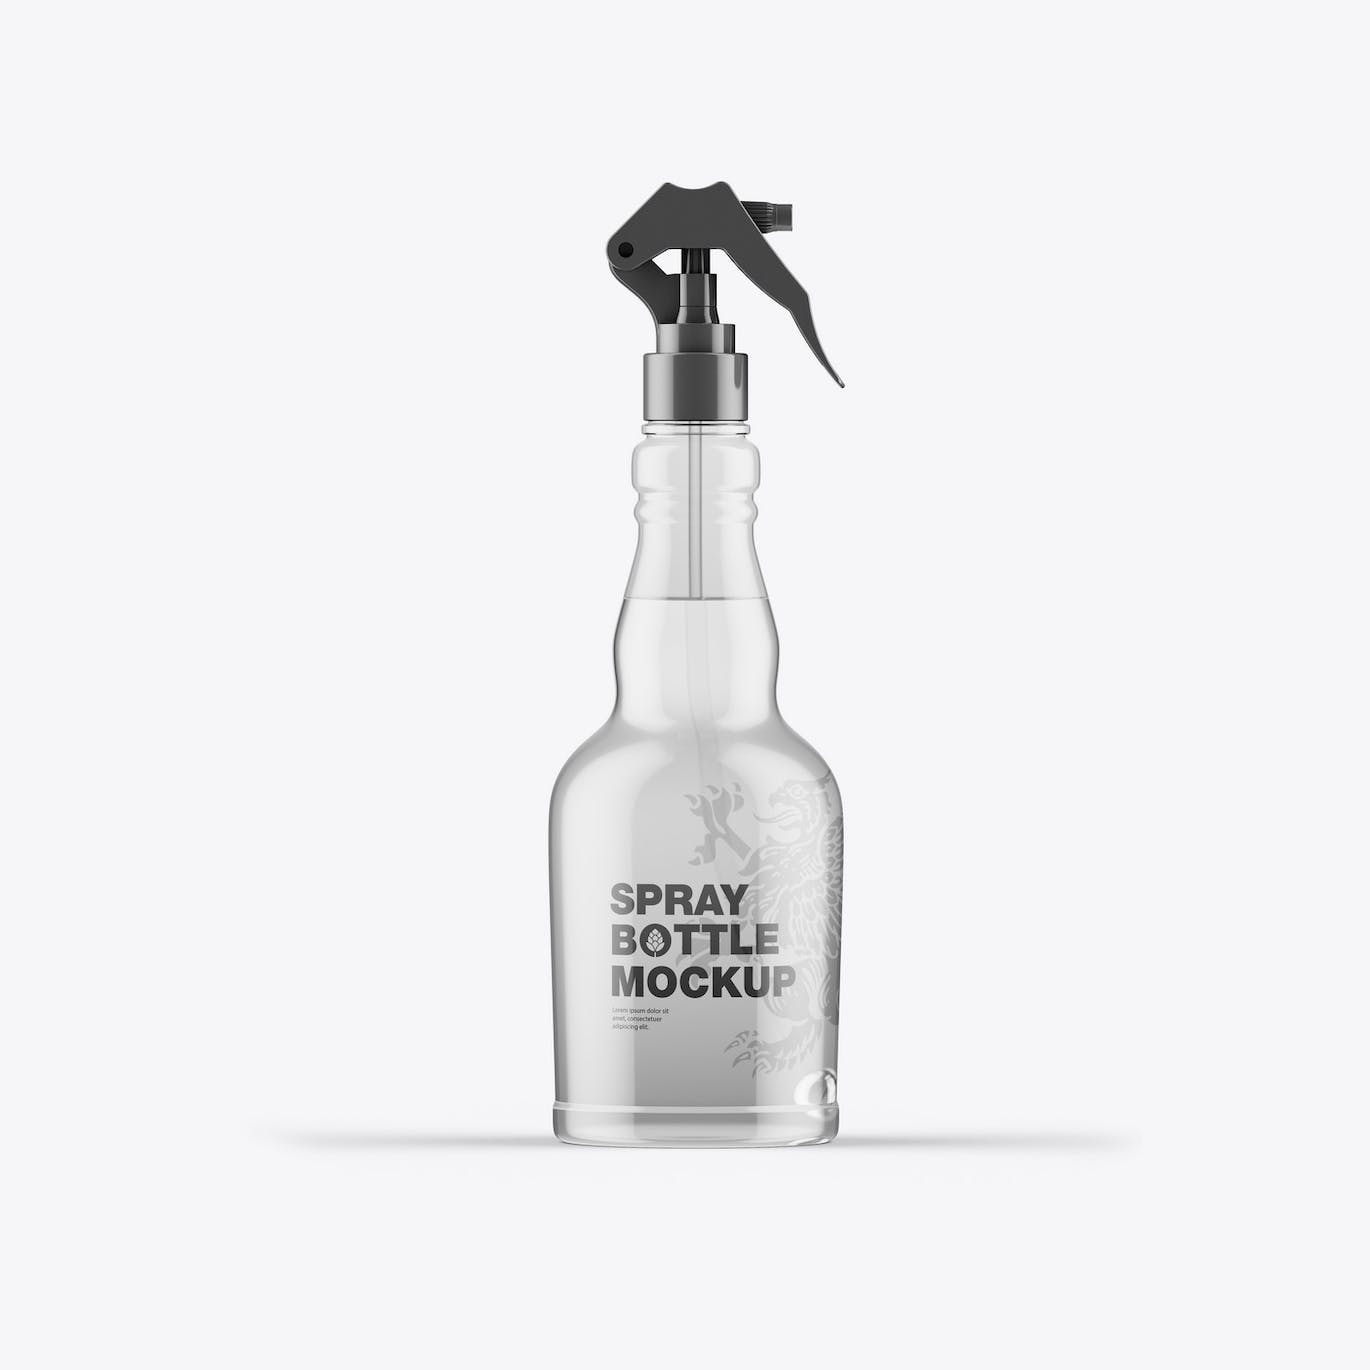 按压玻璃喷雾瓶瓶身设计样机 Set Different Glass Spray Bottles Mockup 样机素材 第4张